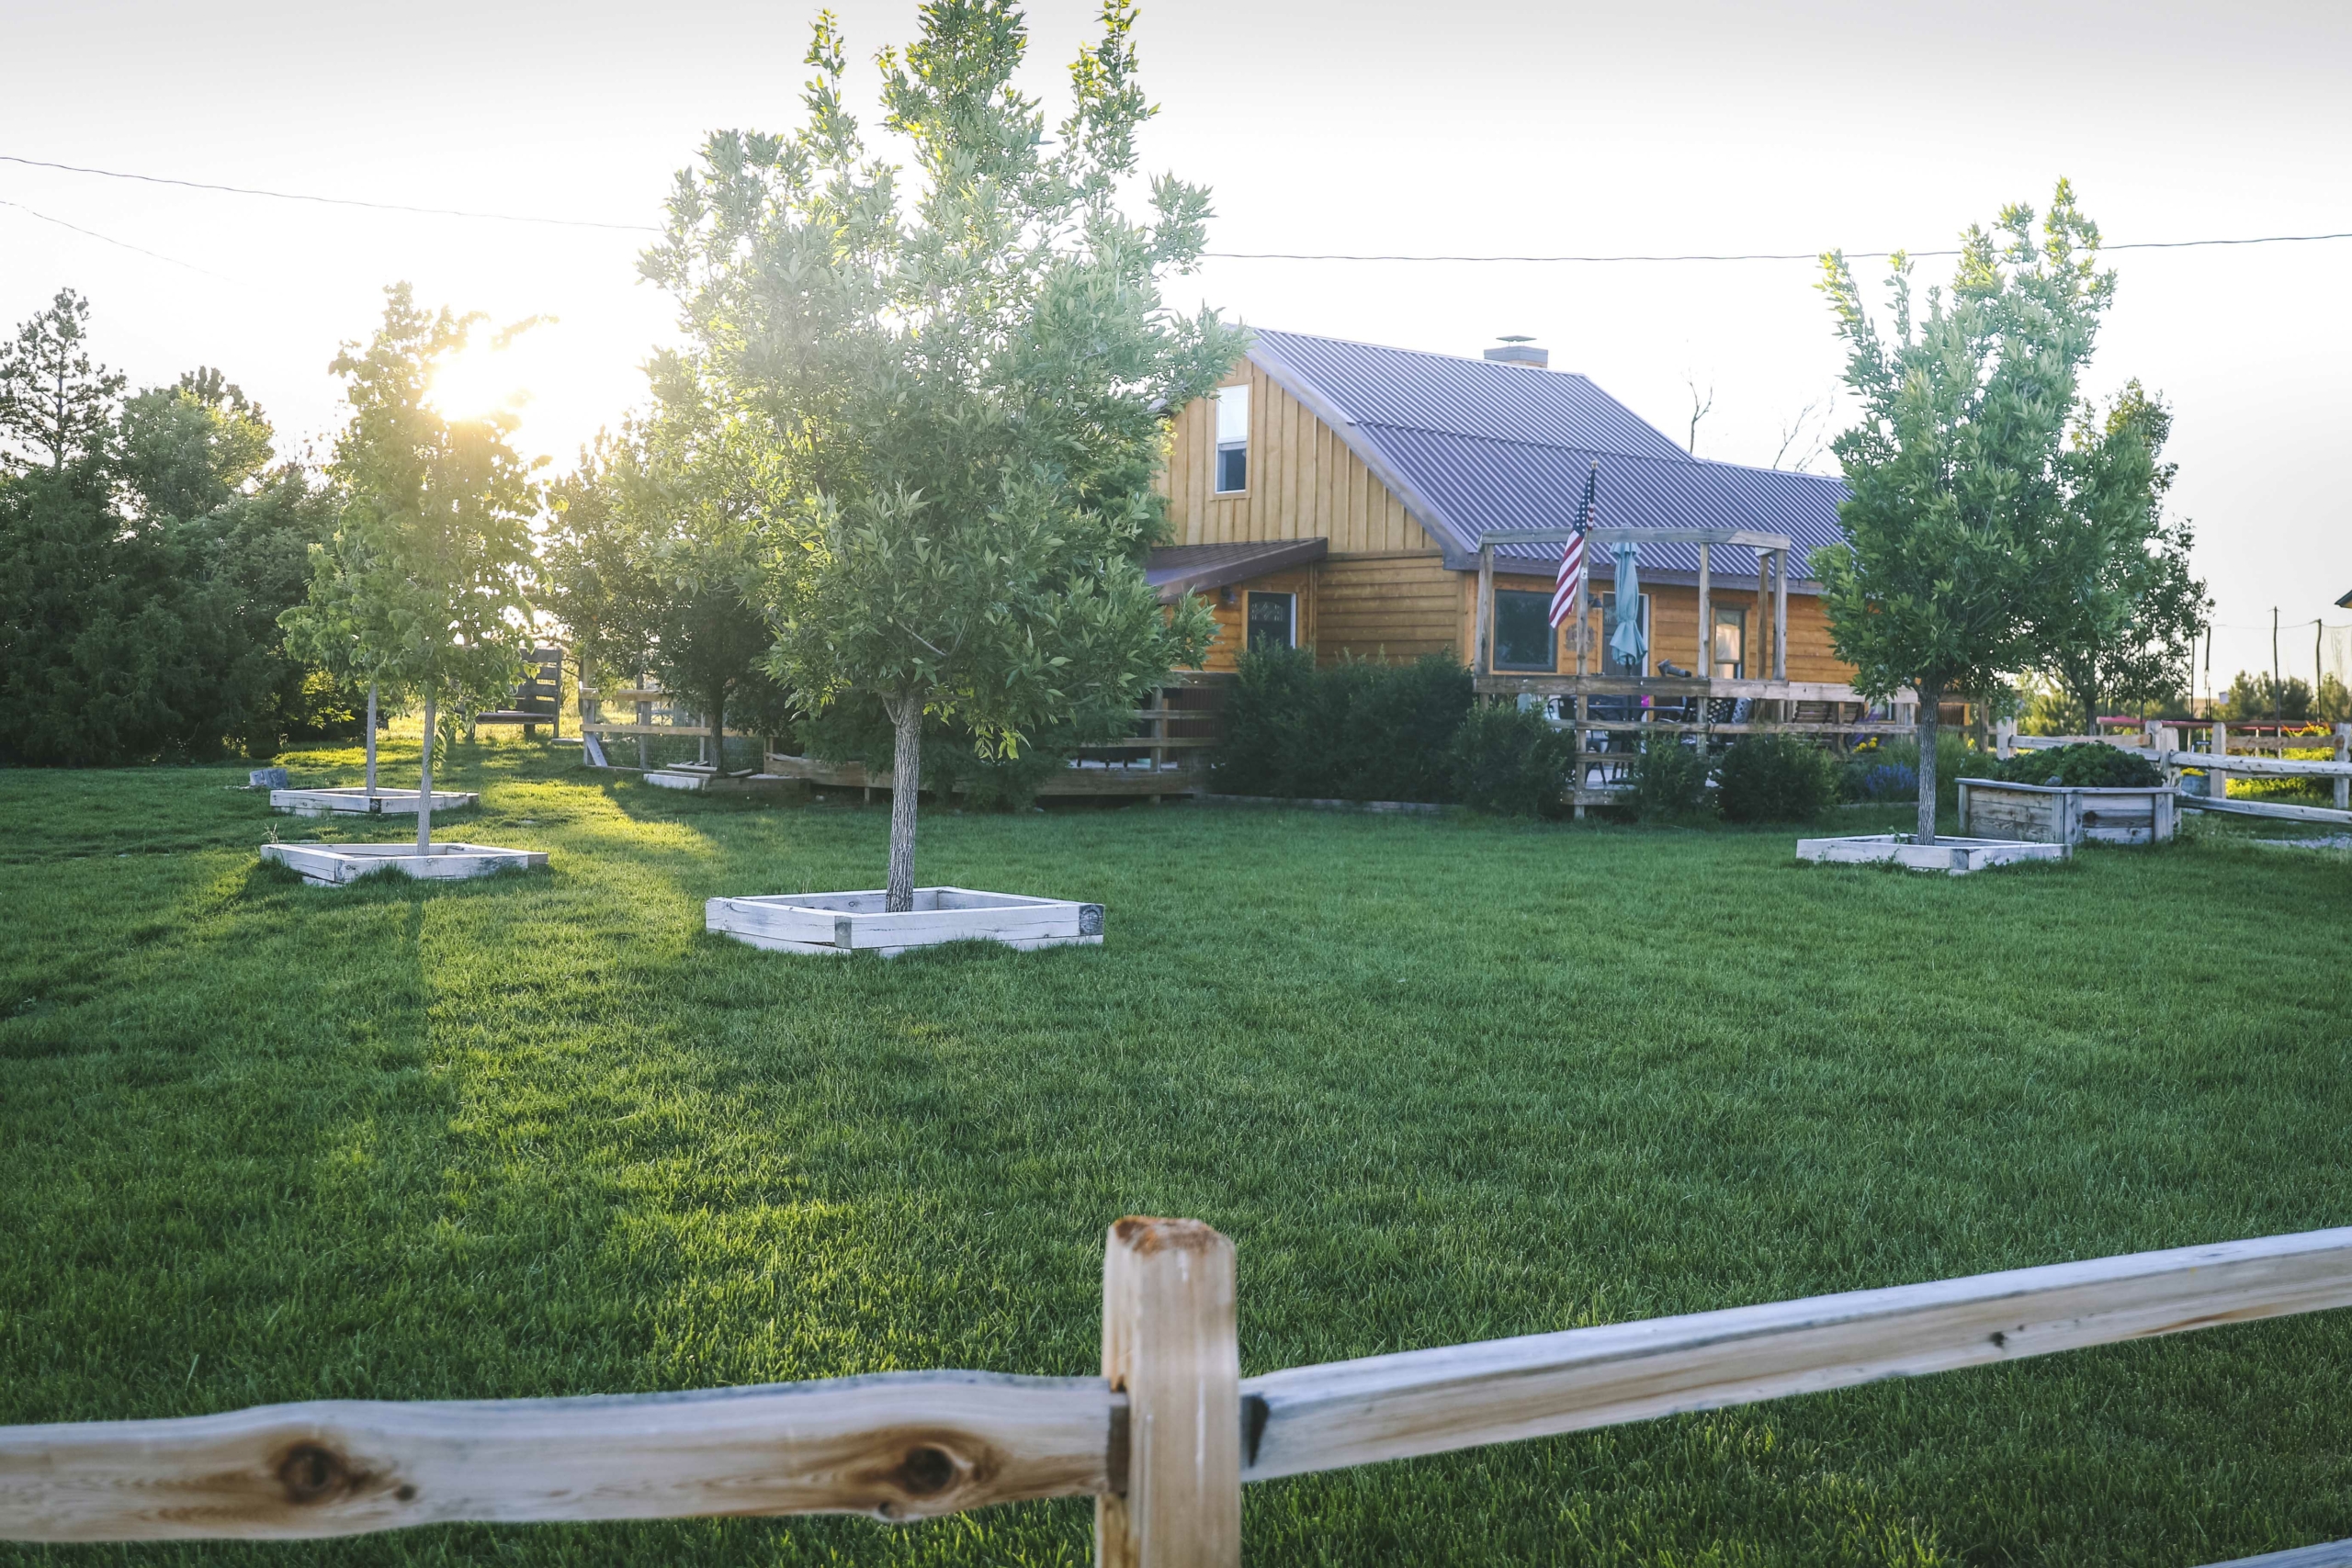 Gia đình họ sống trên một trang trại tự cấp rộng 67 mẫu Anh ở Wyoming. (Ảnh: Đăng dưới sự cho phép của cô Jill Winger)